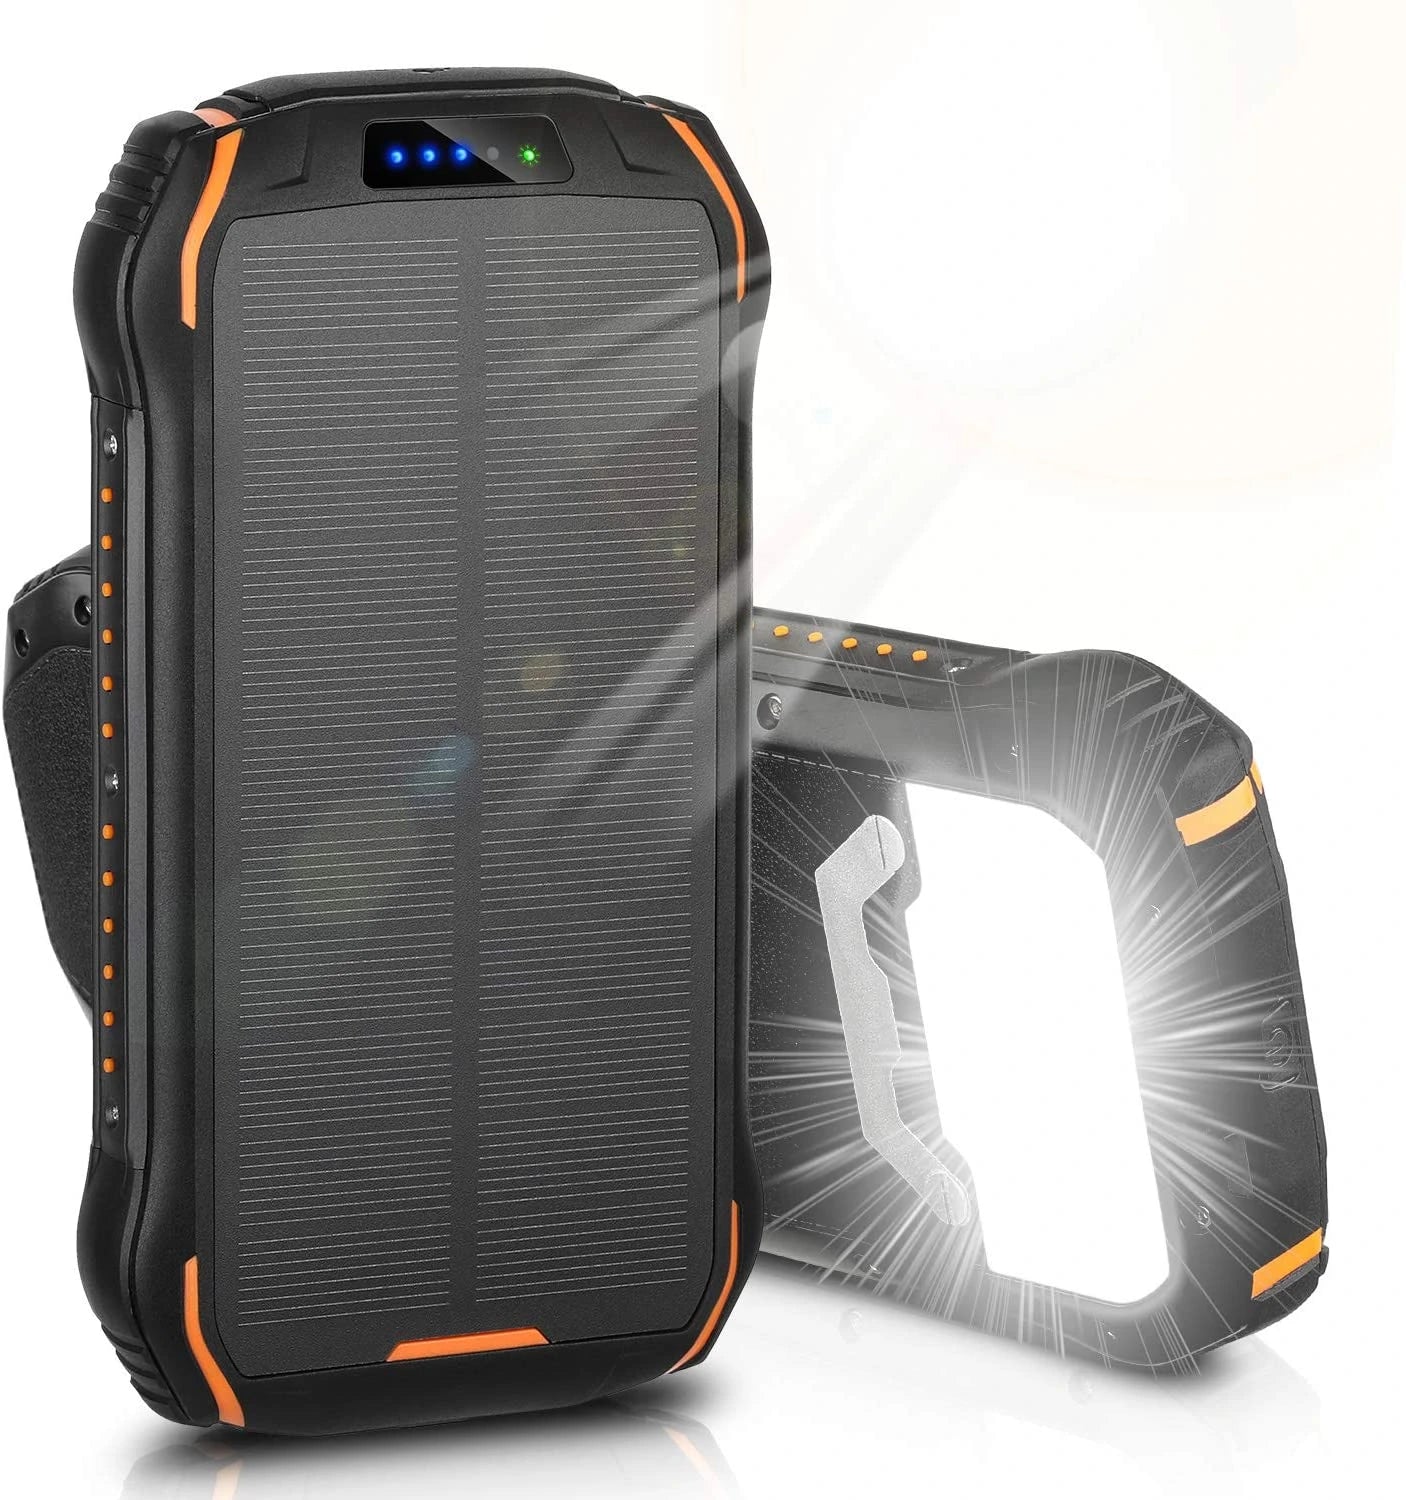 Portable Outdoor Solar Panel Power Bank 26800mAh ENEGON